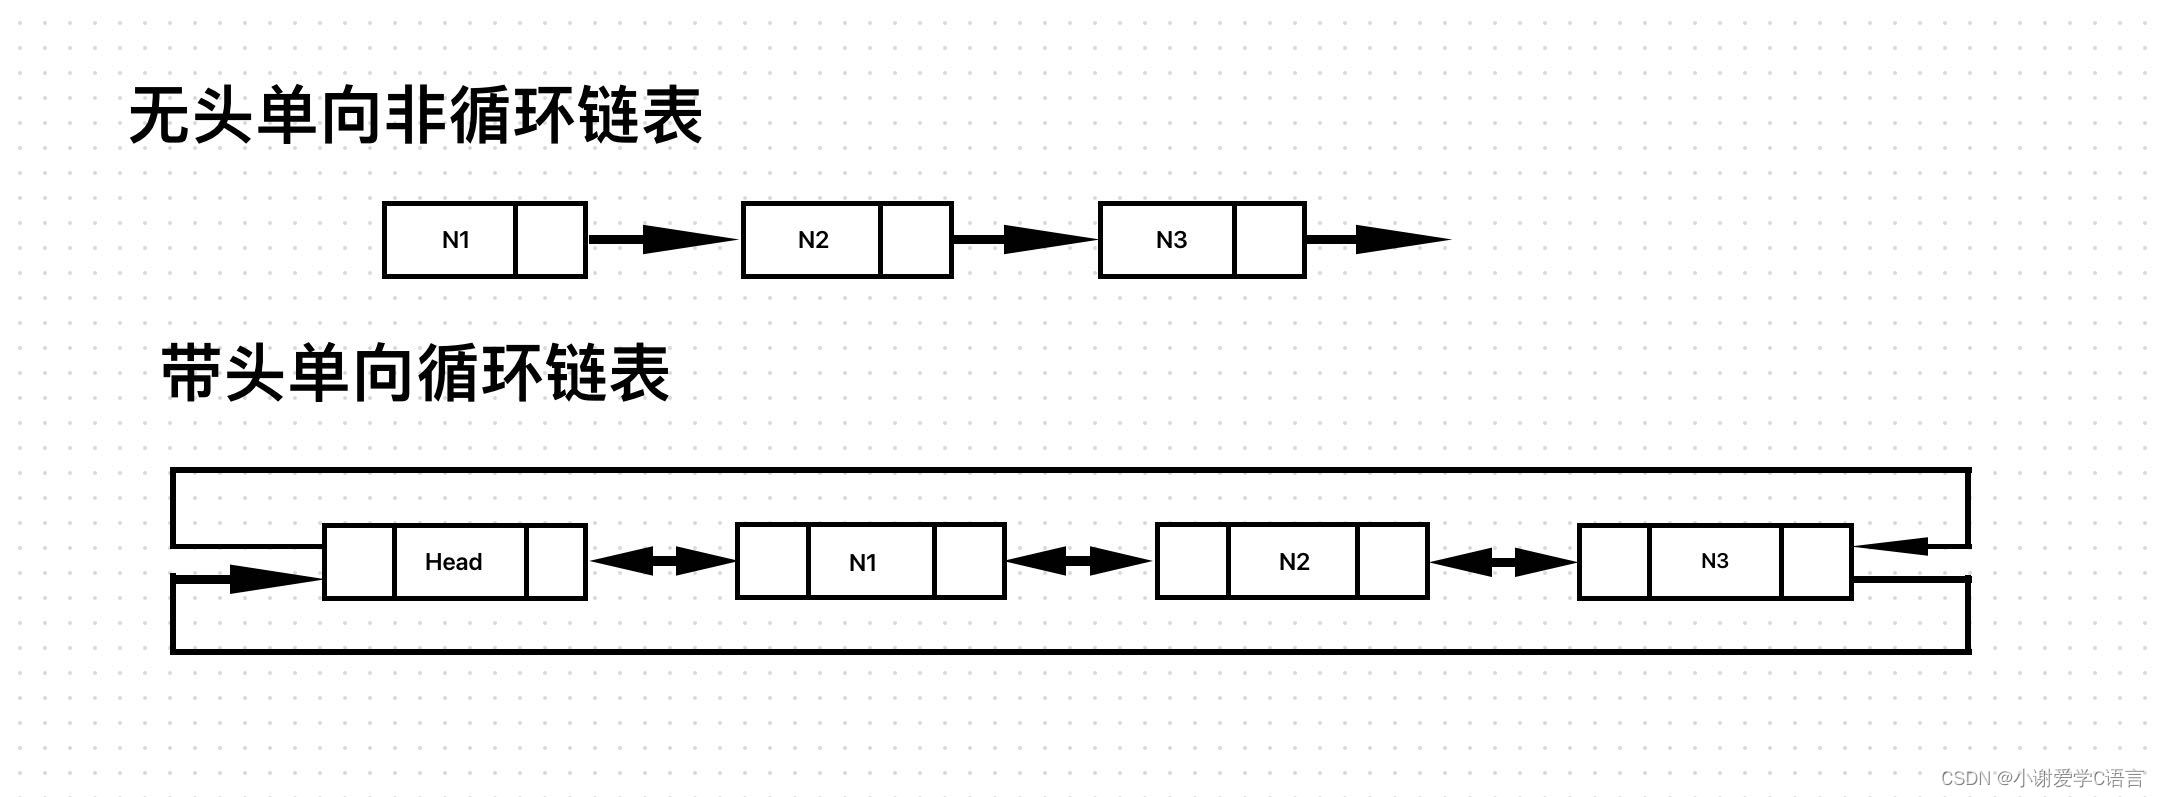 数据结构入门（C语言版）线性表中链表介绍及无头单向非循环链表接口实现